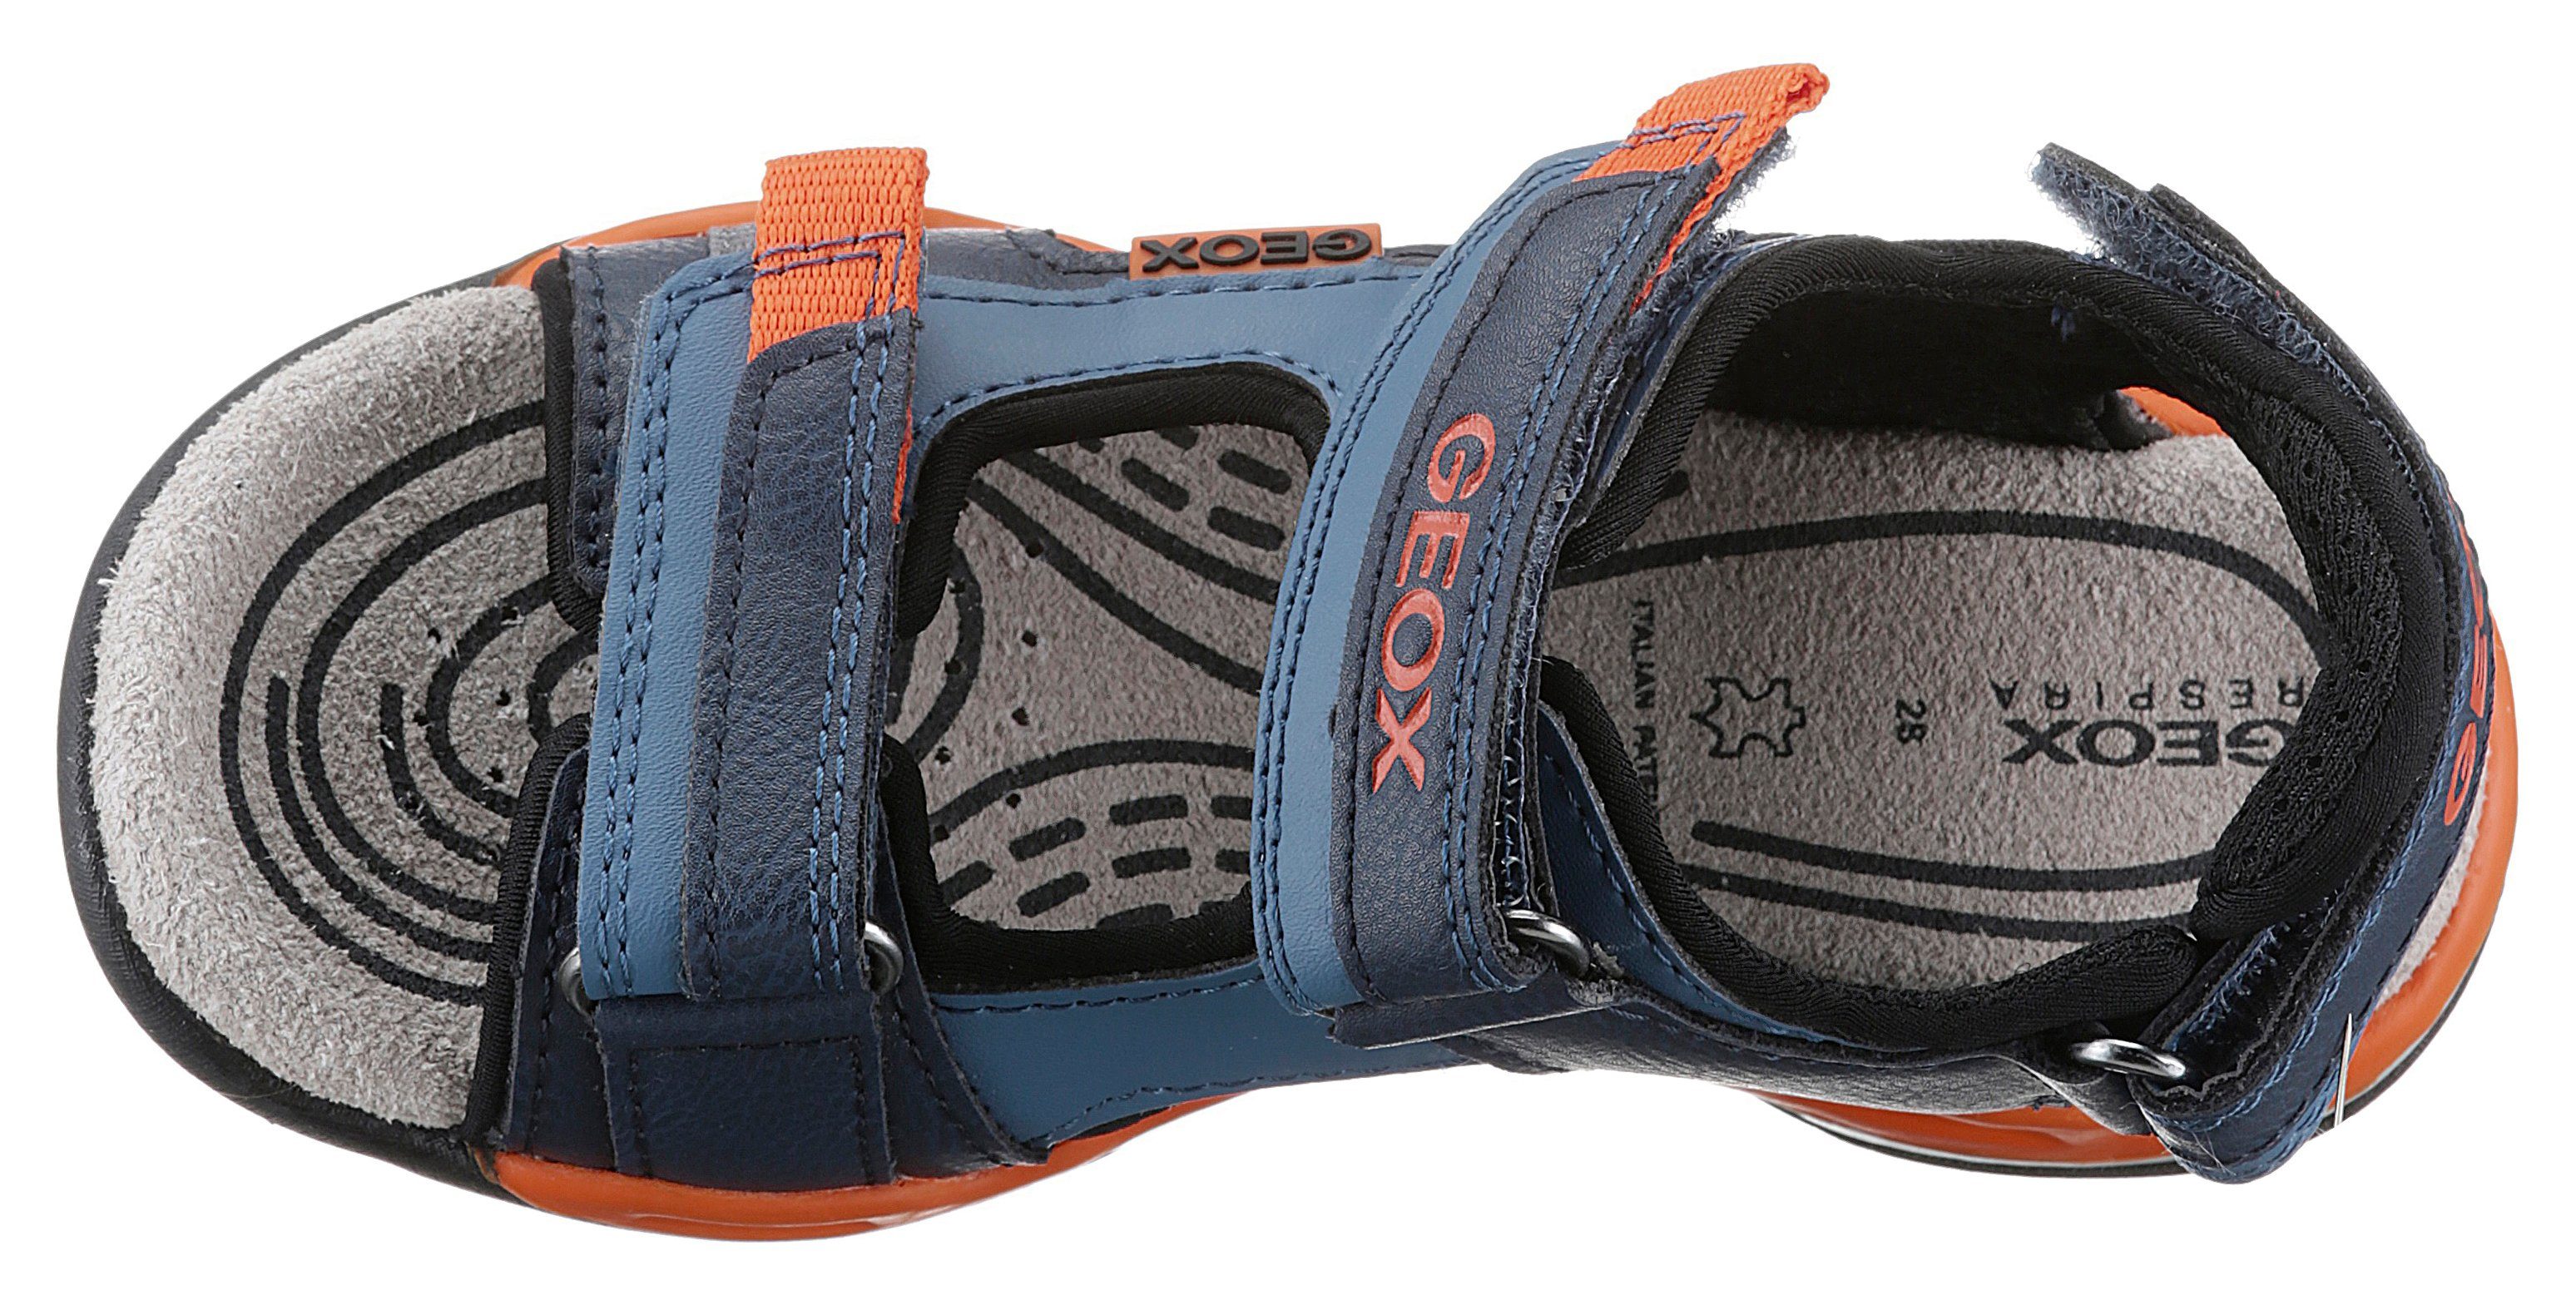 Geox J Blau BOREALIS BOY zusätzlichem (DK AVIO/ORANGE) Sandale mit Fersenklettverschluss